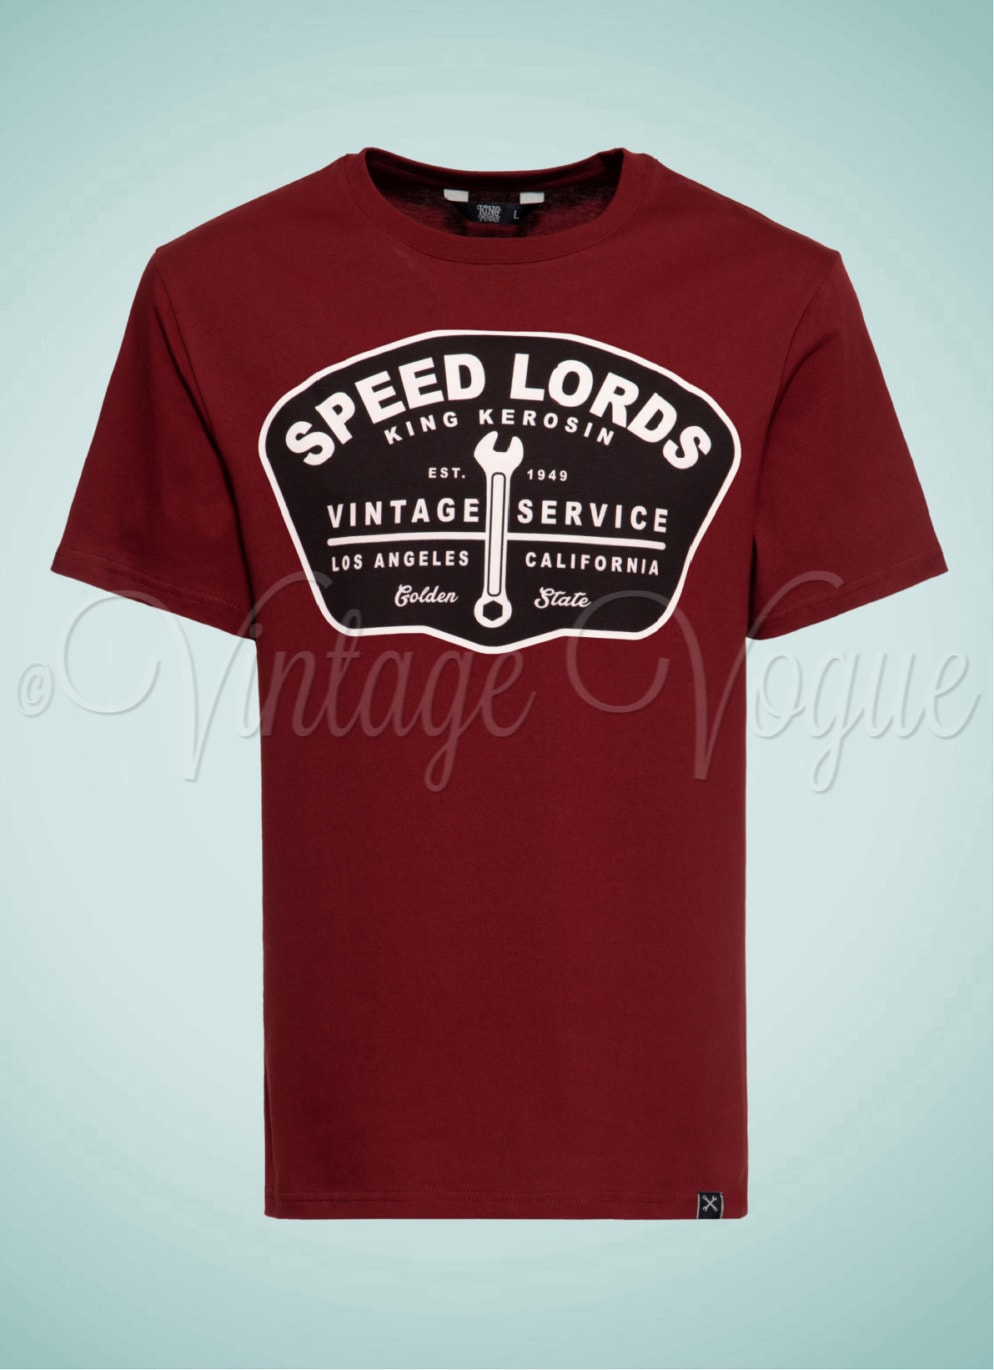 King Kerosin 50er Jahre Retro Rockabilly Herren T-Shirt Speed Lords 1949 in Weinrot